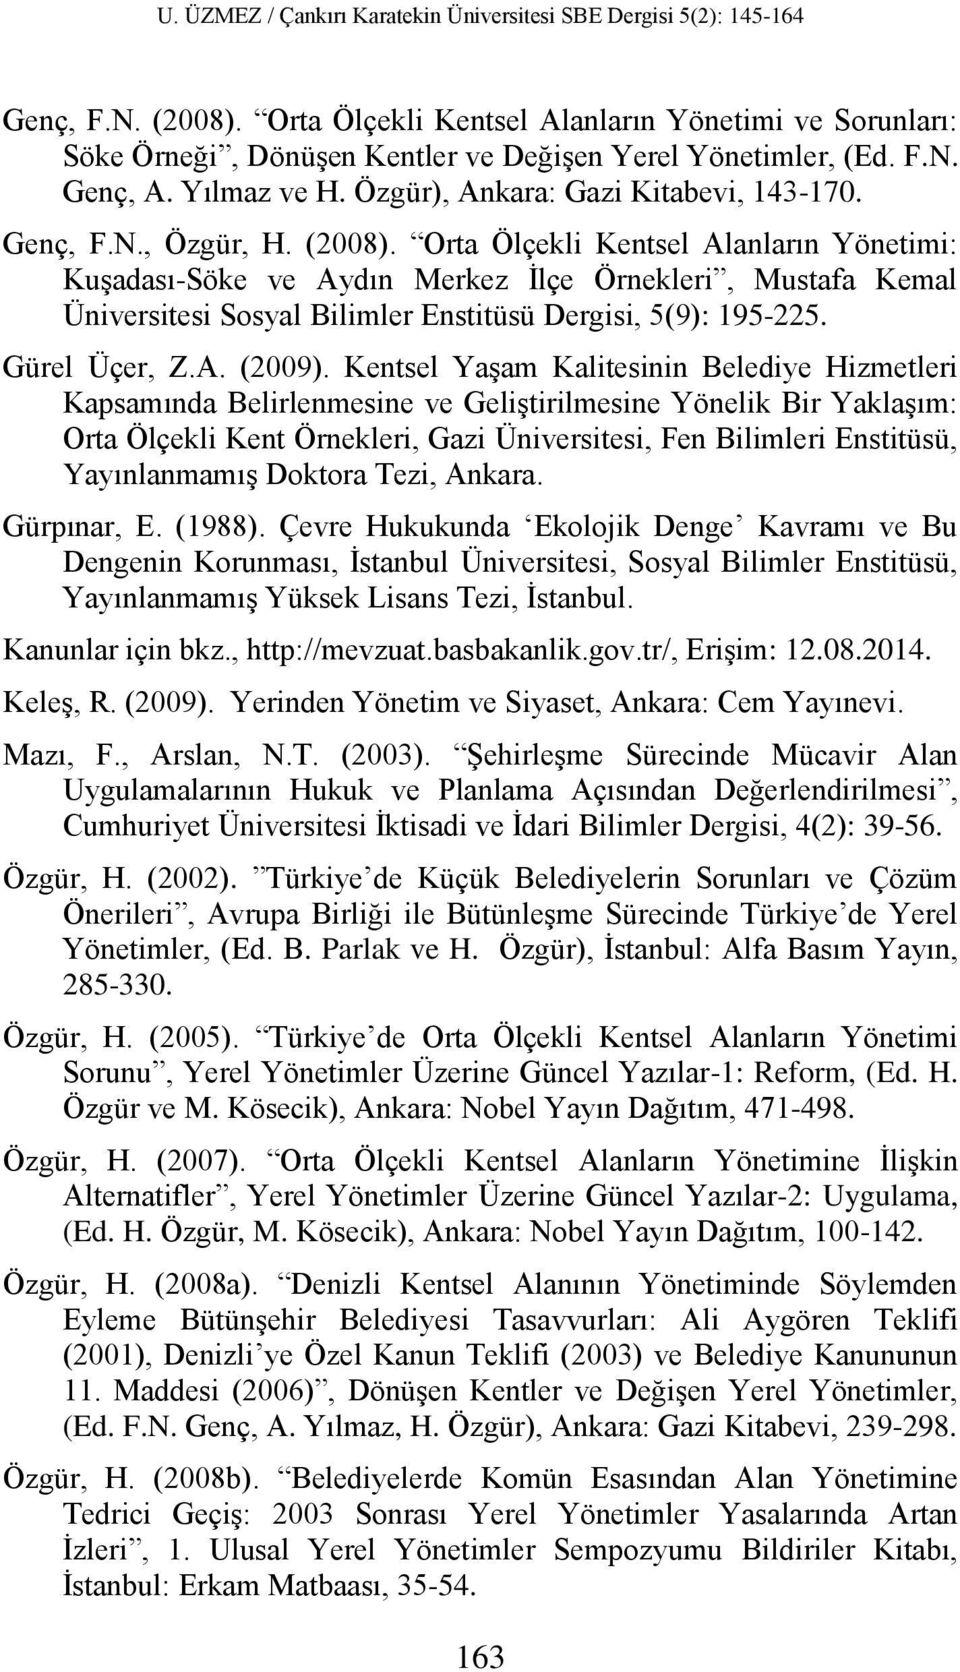 Orta Ölçekli Kentsel Alanların Yönetimi: Kuşadası-Söke ve Aydın Merkez İlçe Örnekleri, Mustafa Kemal Üniversitesi Sosyal Bilimler Enstitüsü Dergisi, 5(9): 195-225. Gürel Üçer, Z.A. (2009).